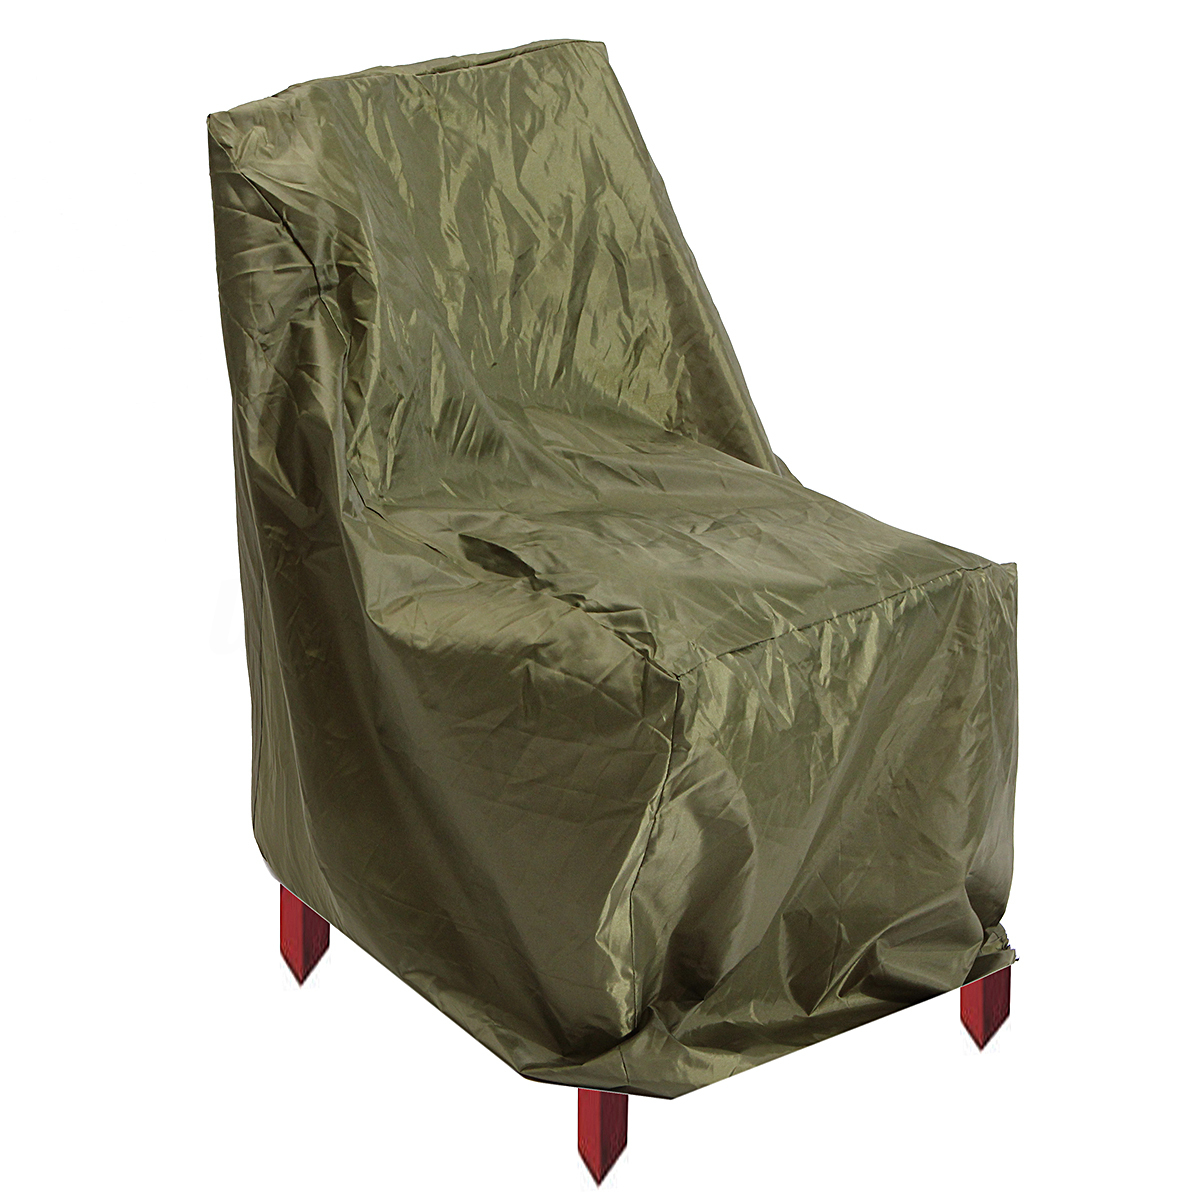 waterproof chair covers